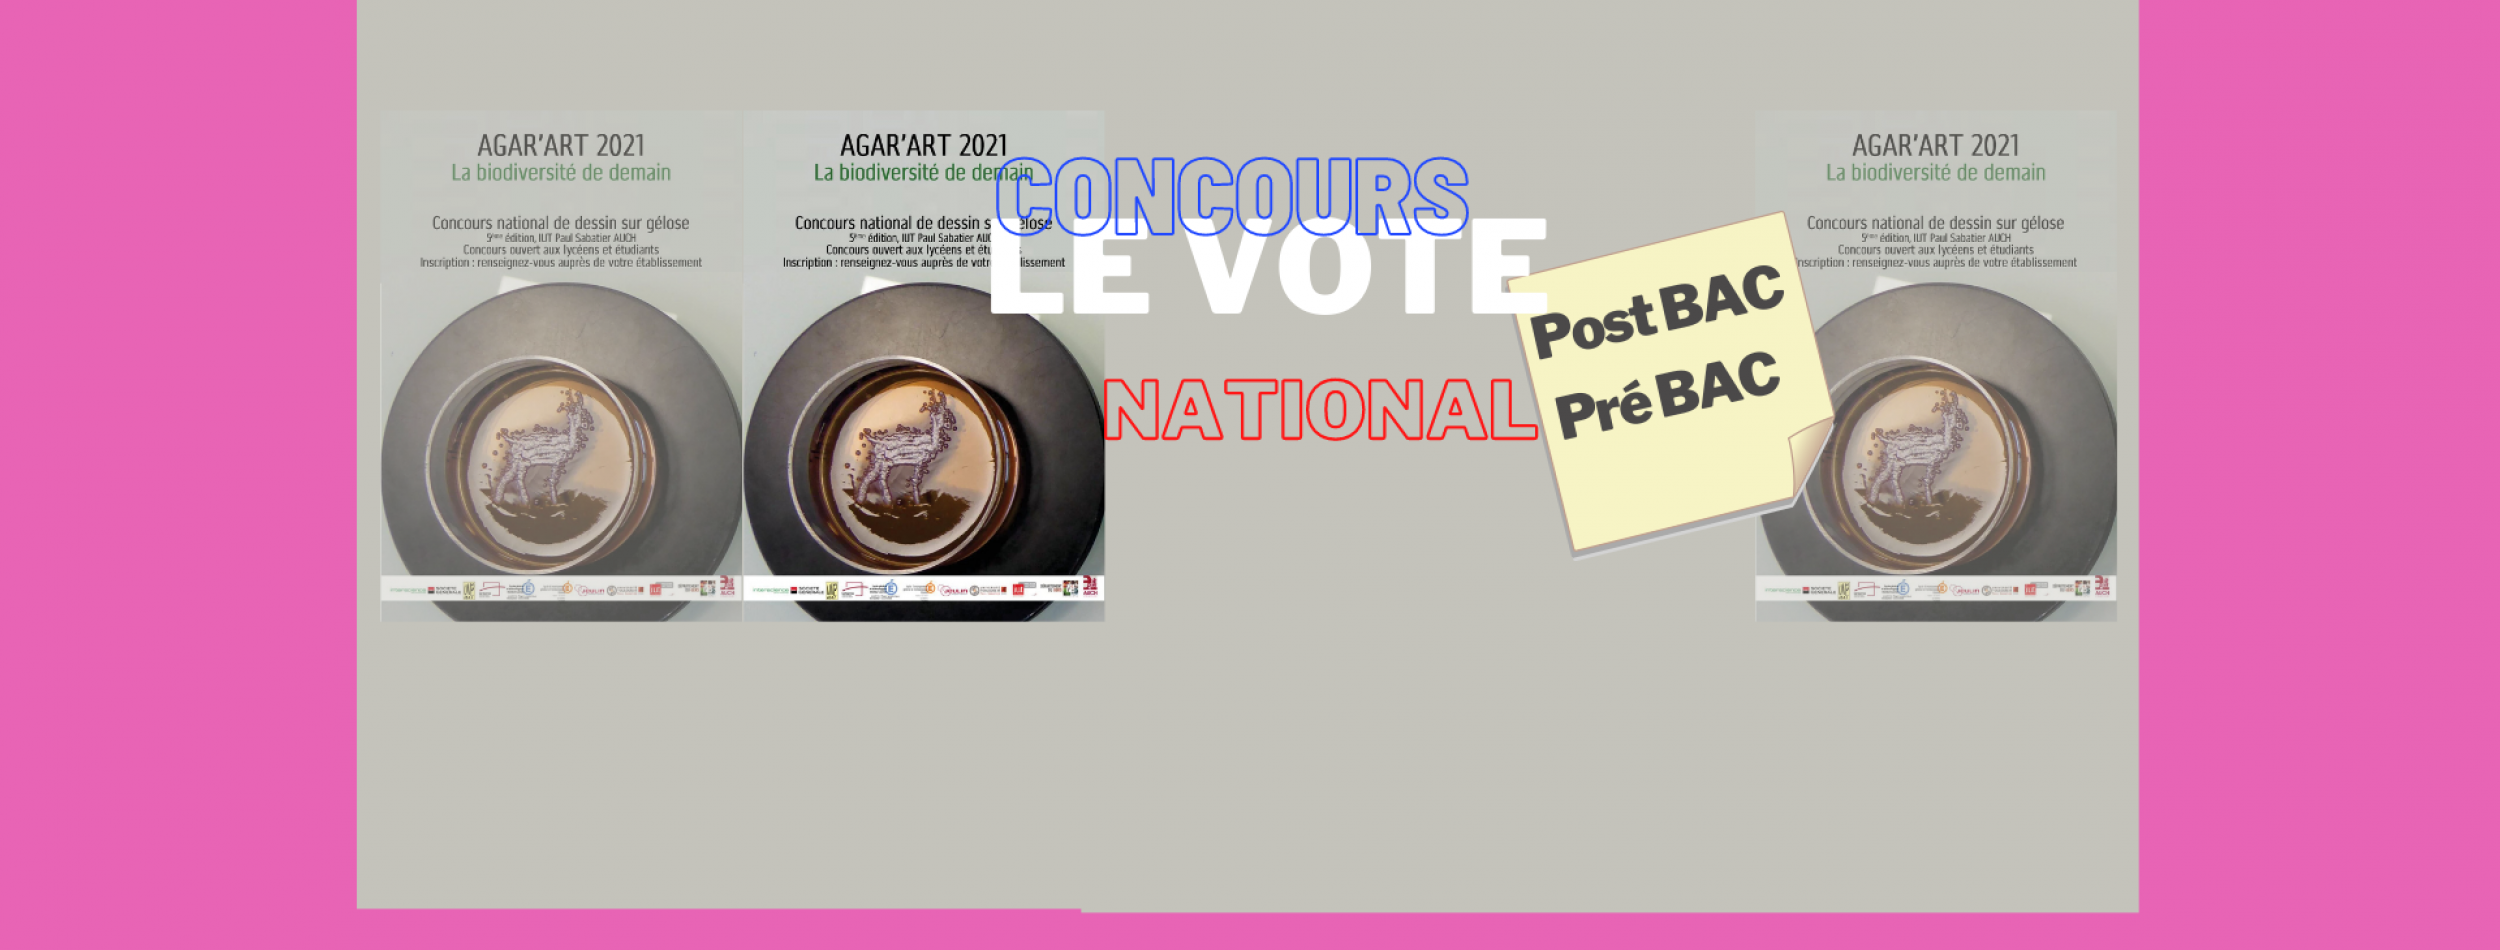 Concours Agar Art 2021 Le vote national